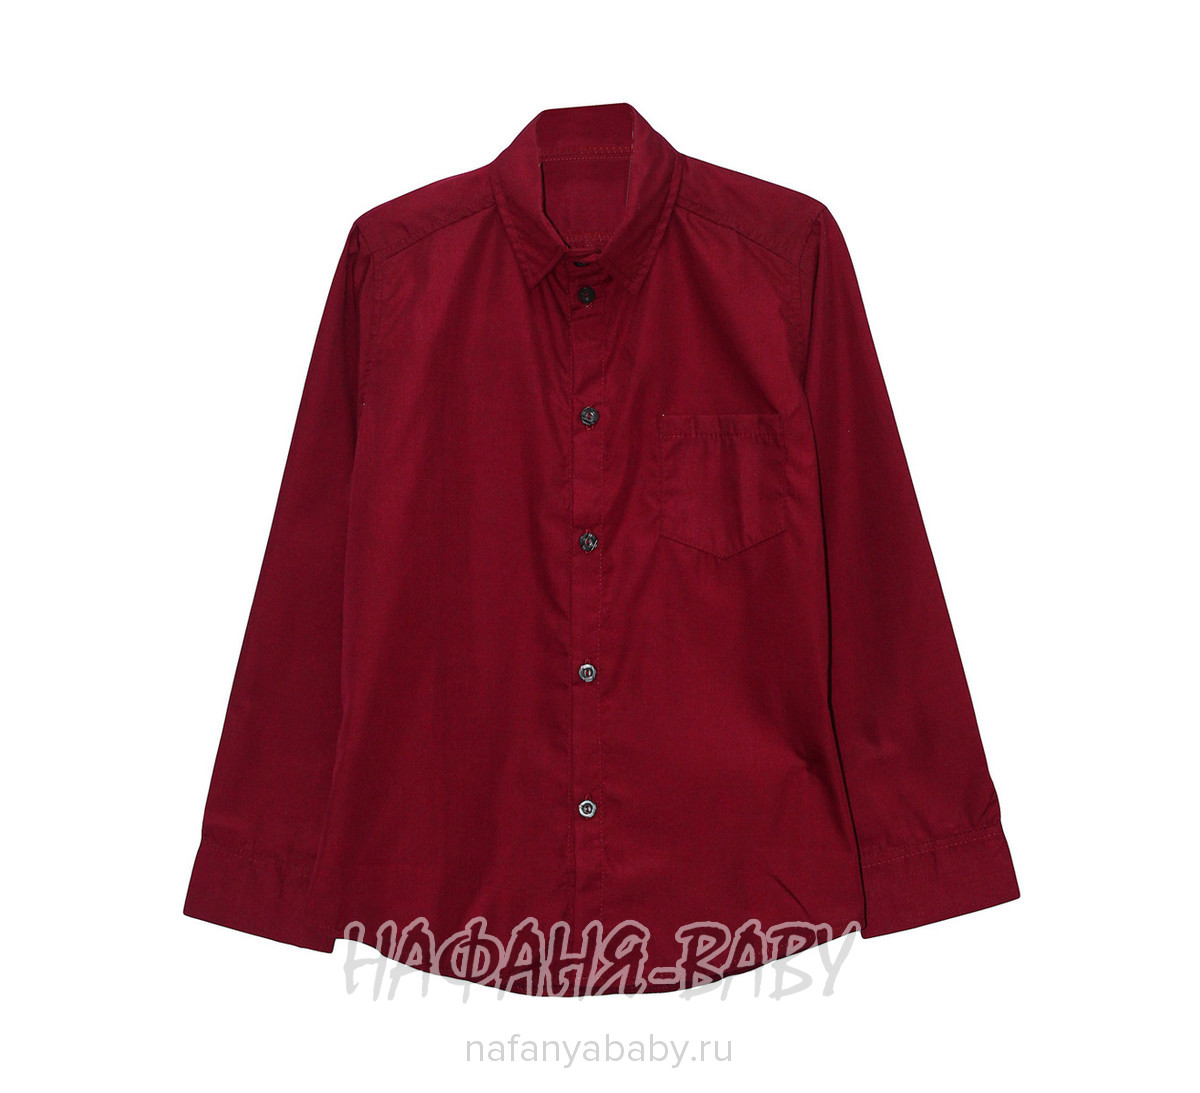 Рубашка KGMART, купить в интернет магазине Нафаня. арт: 3103.